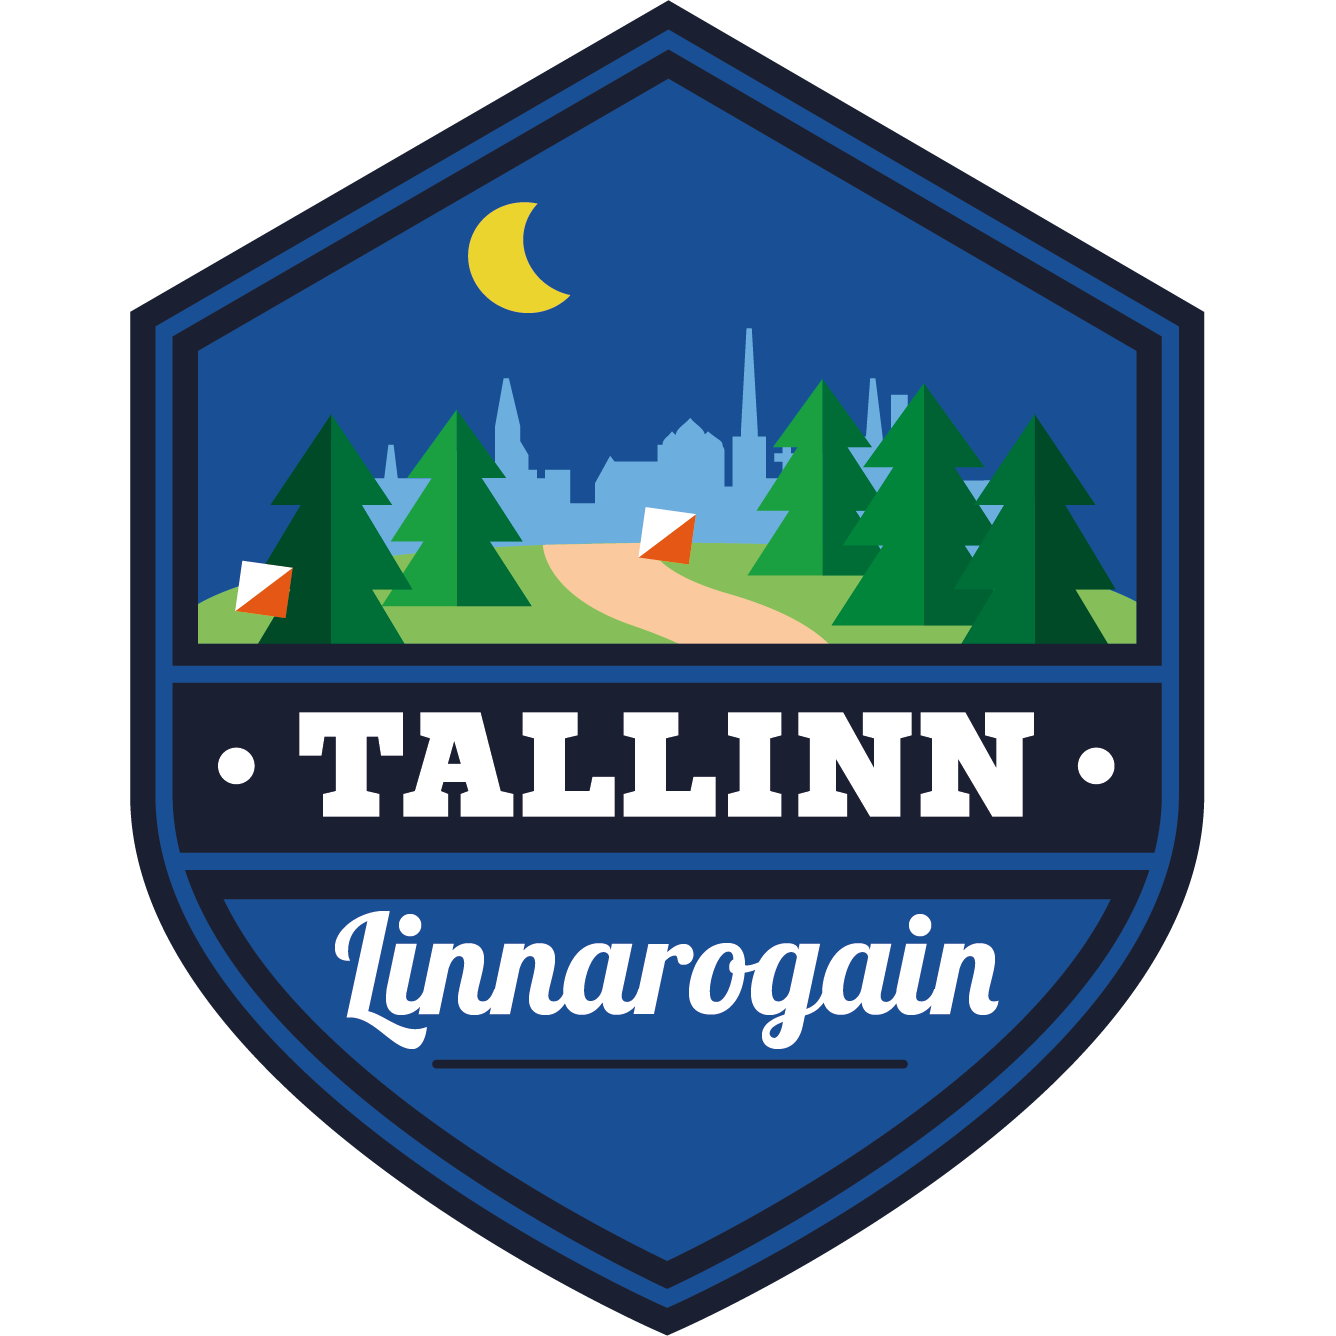 image of Tallinna Linnarogain